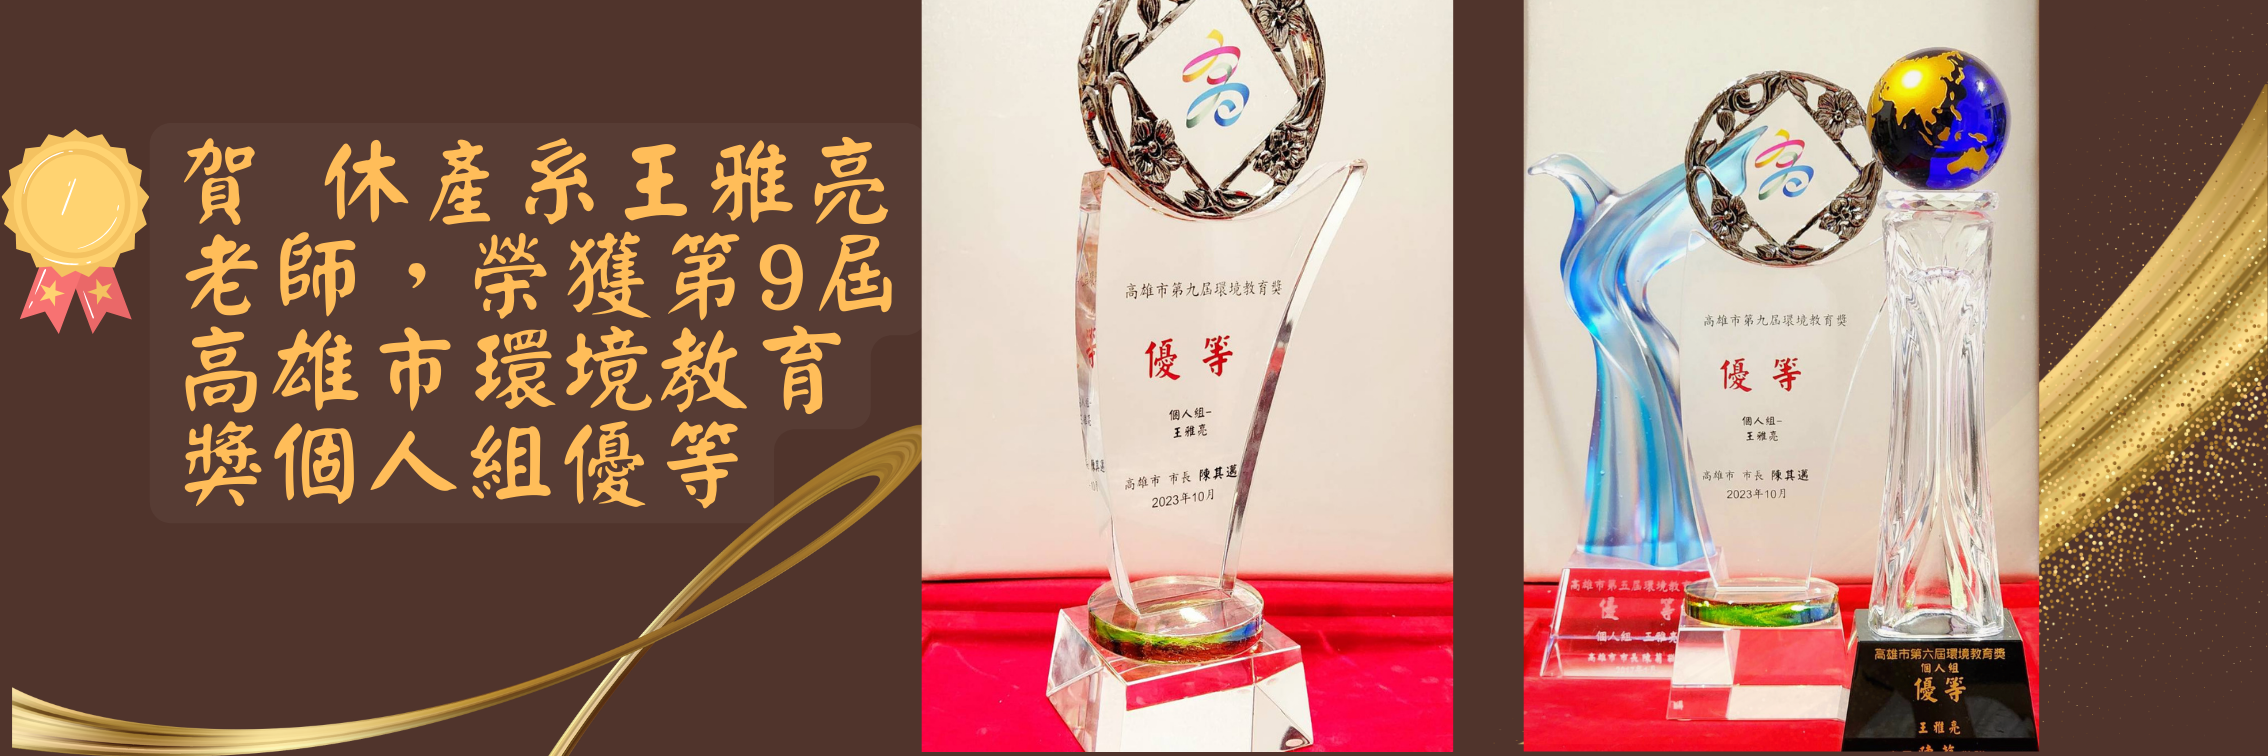 賀 休產系 王雅亮老師 榮獲 第9屆高雄市環境教育獎